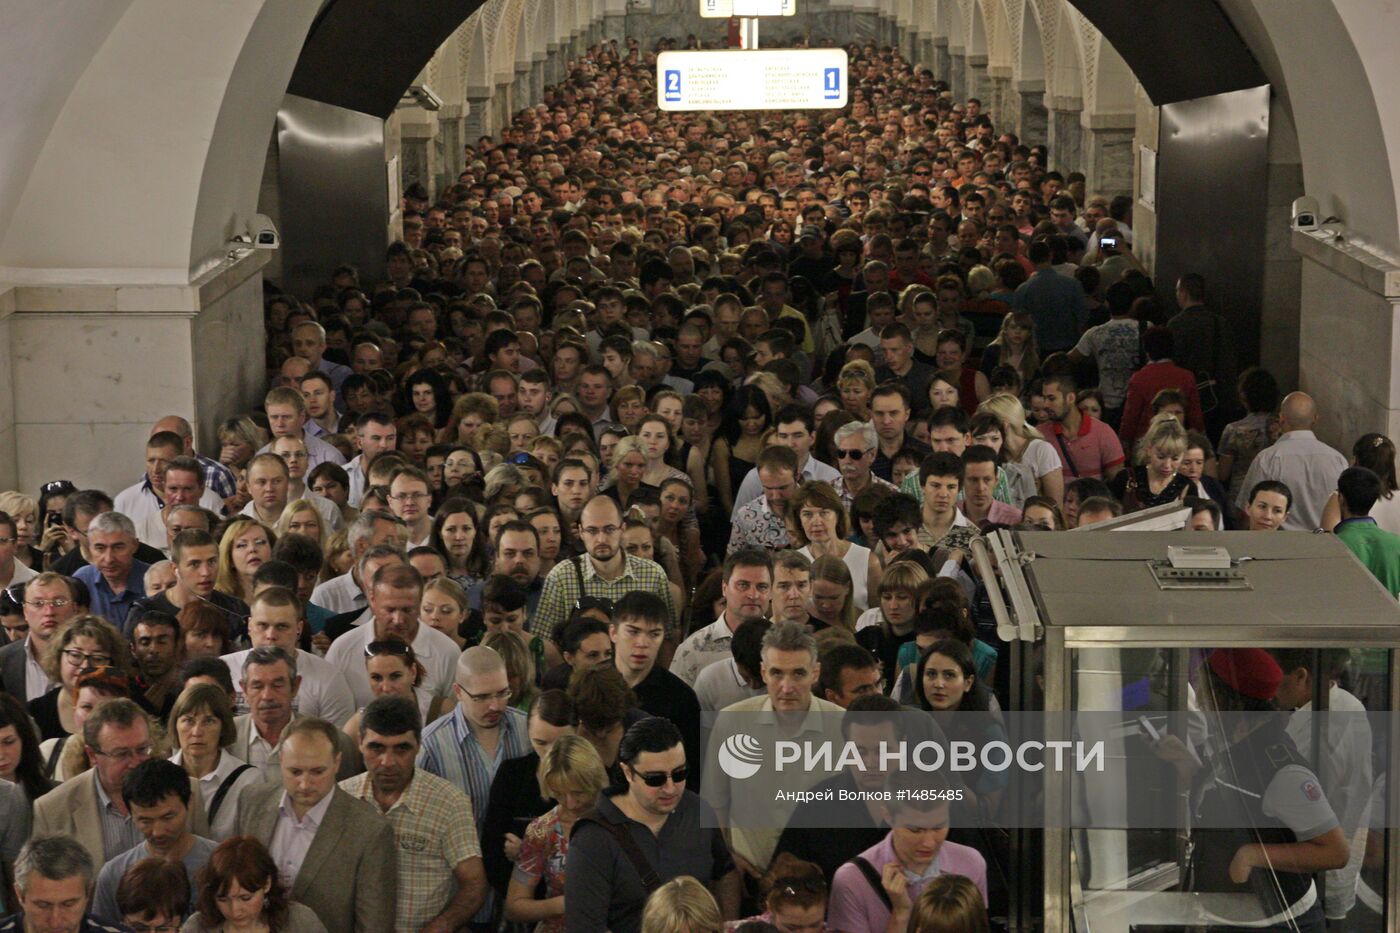 Станцию метро "Охотный ряд" в центре Москвы закрыли из-за пожара